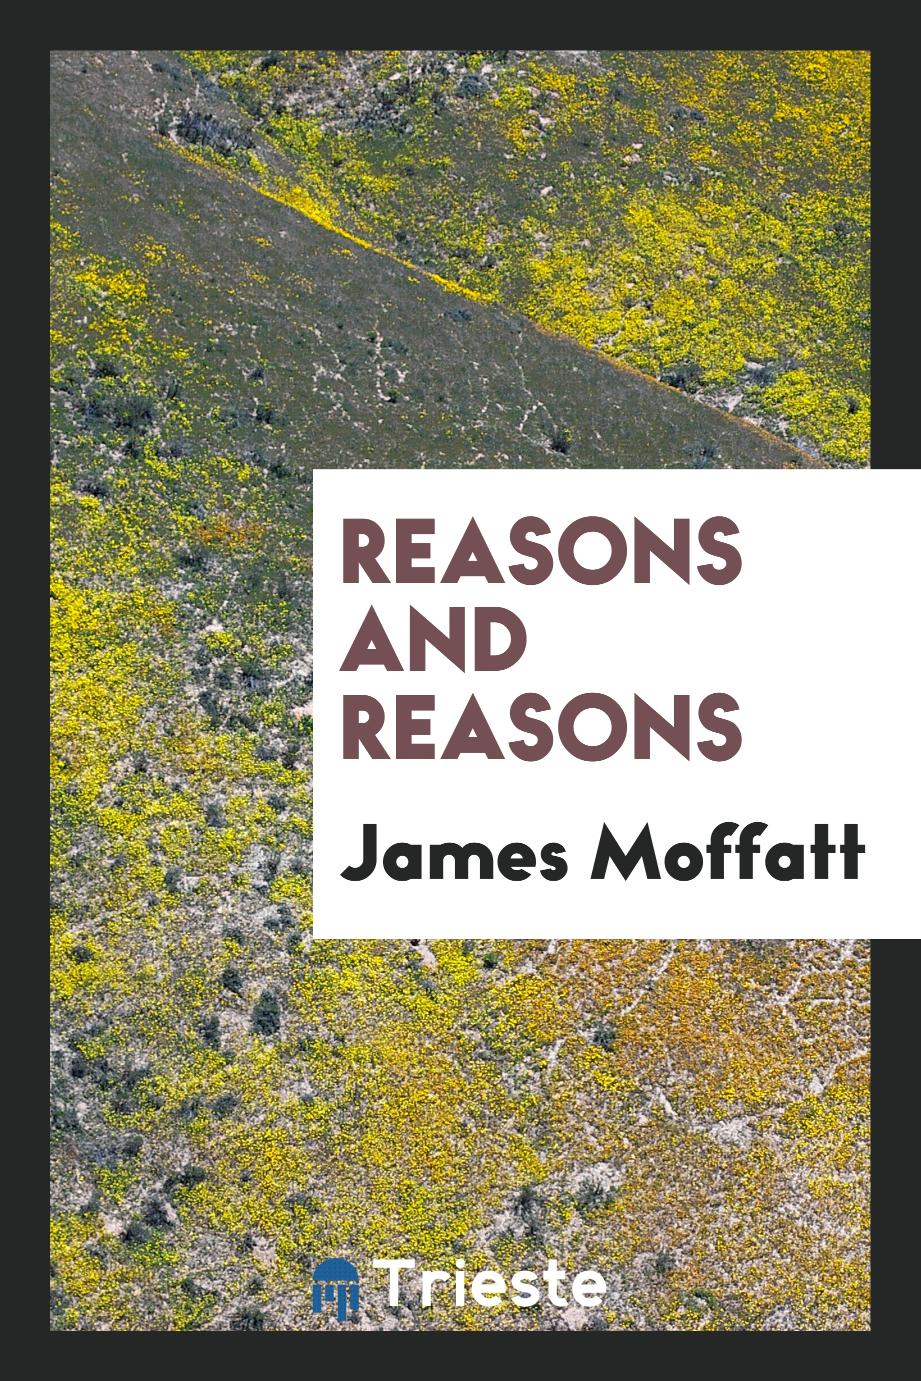 Reasons and reasons